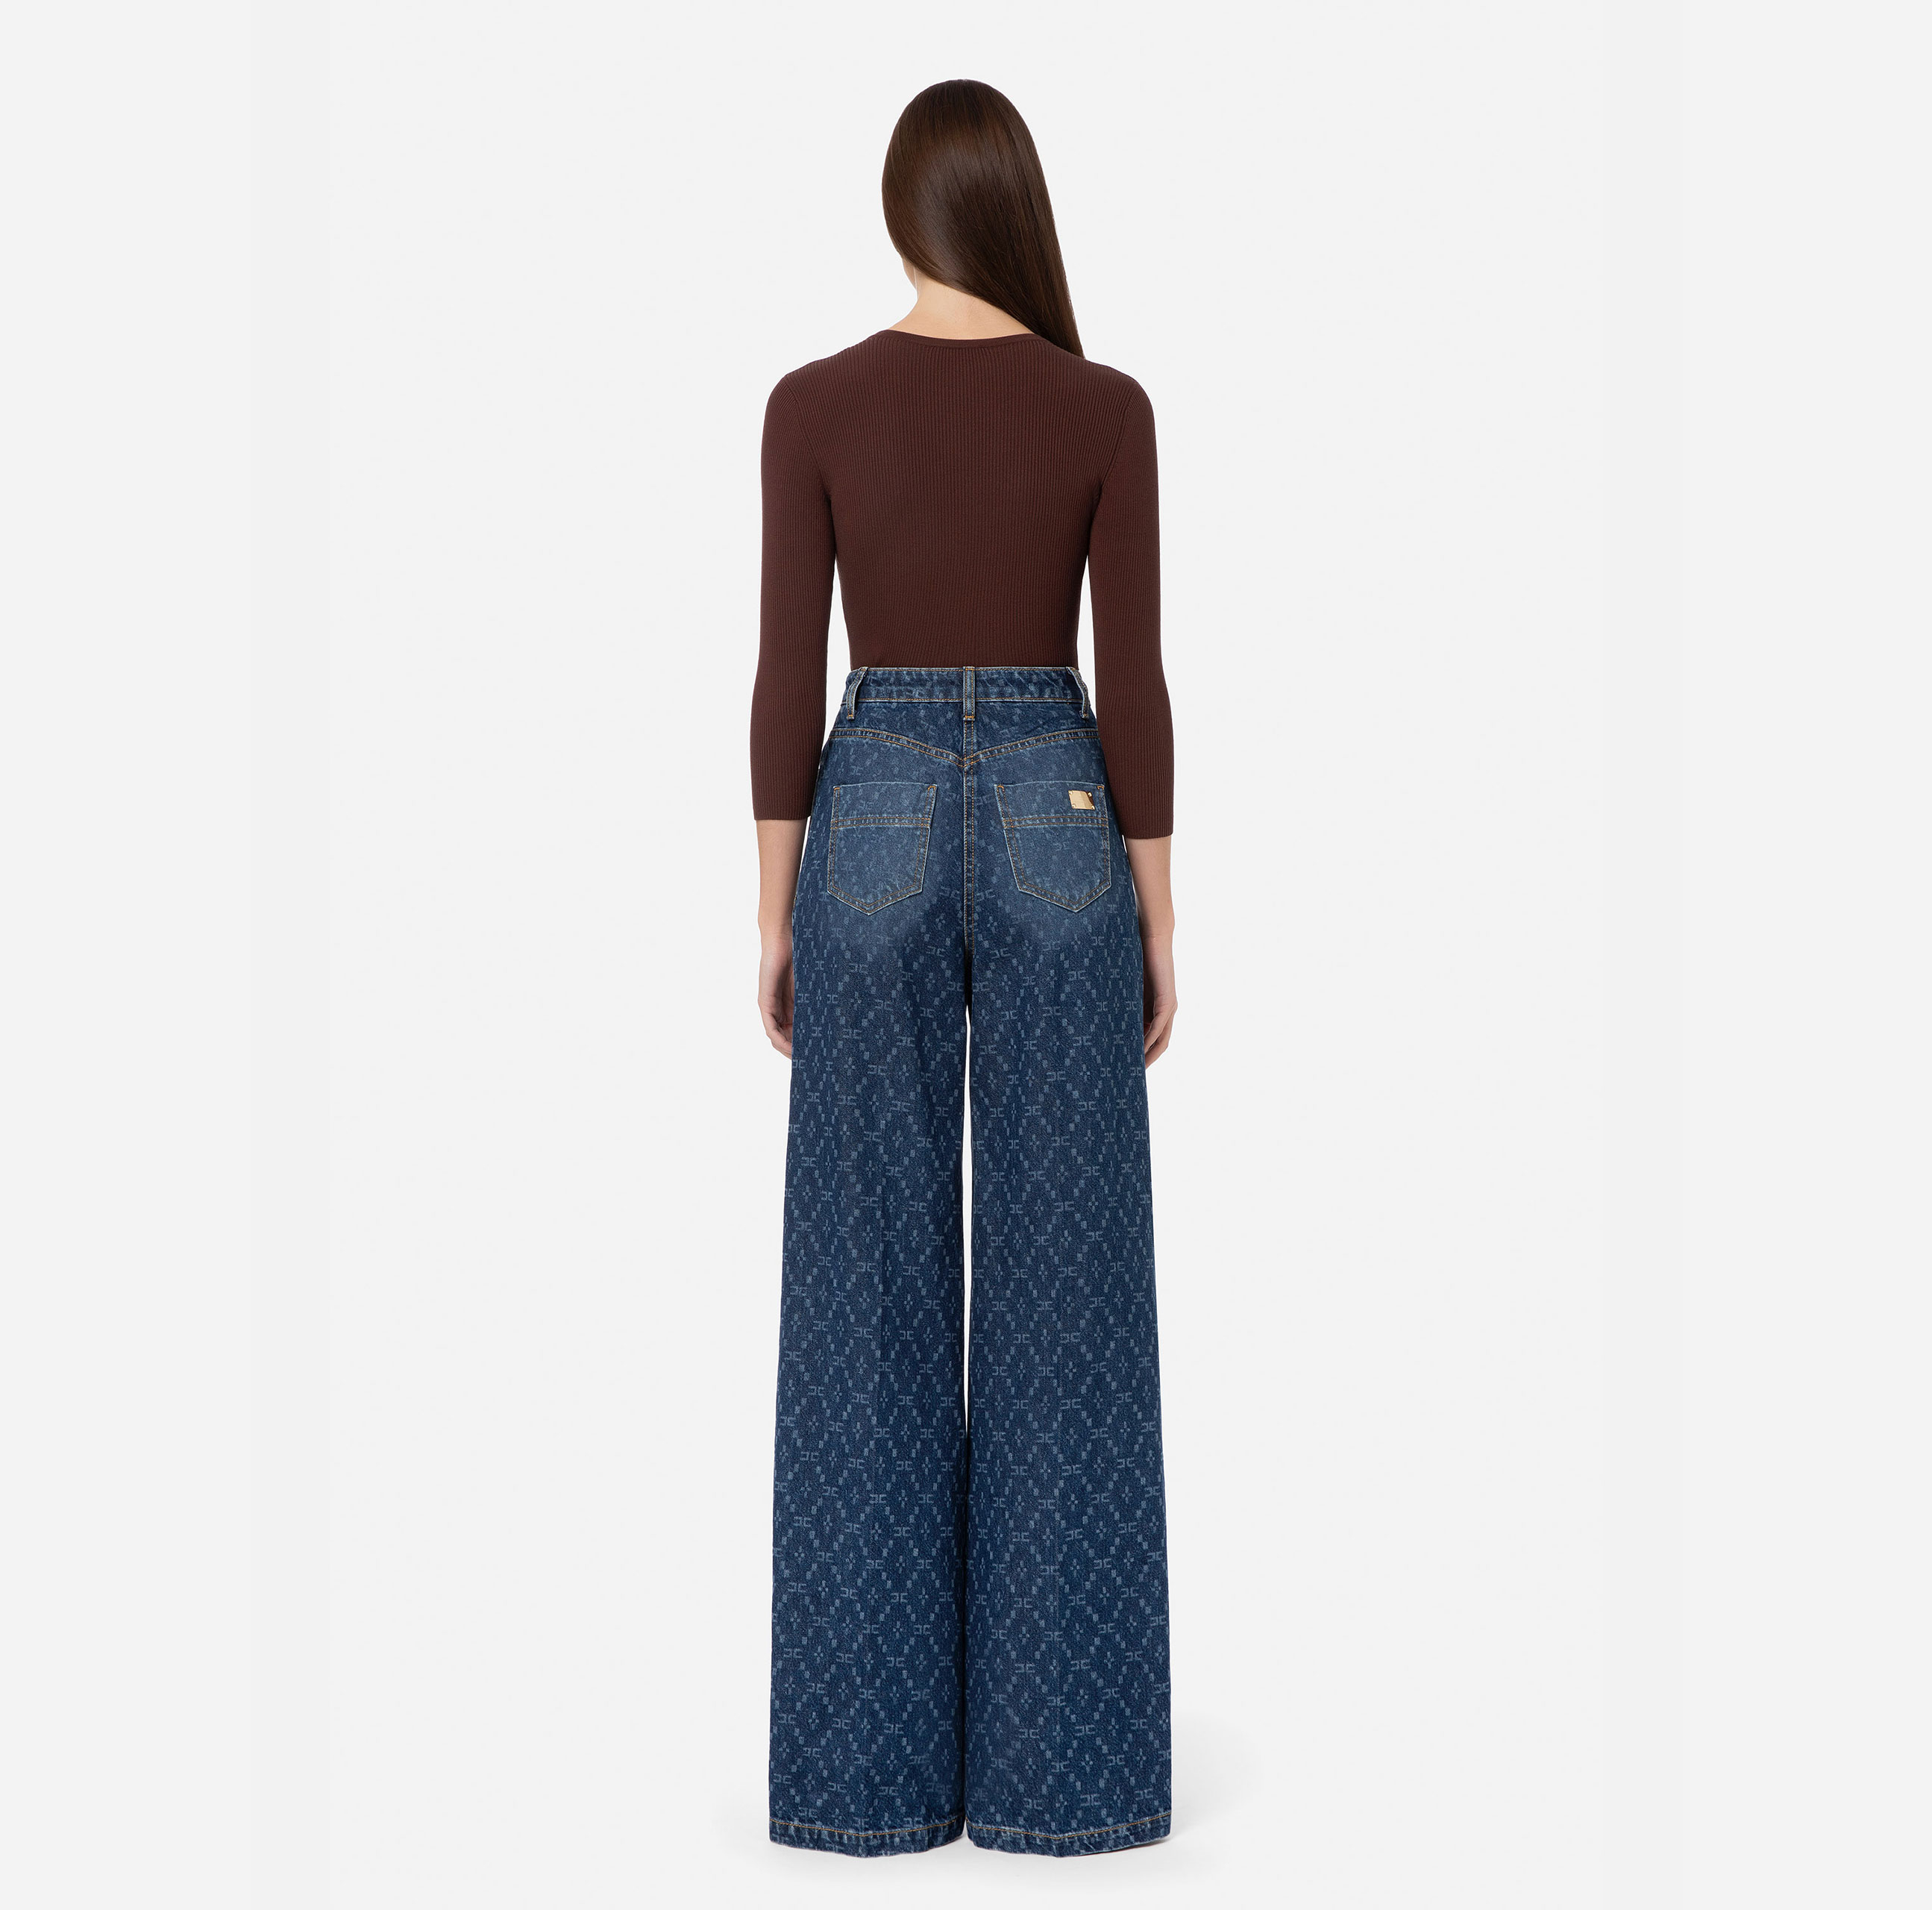 Five-pocket jeans - Elisabetta Franchi